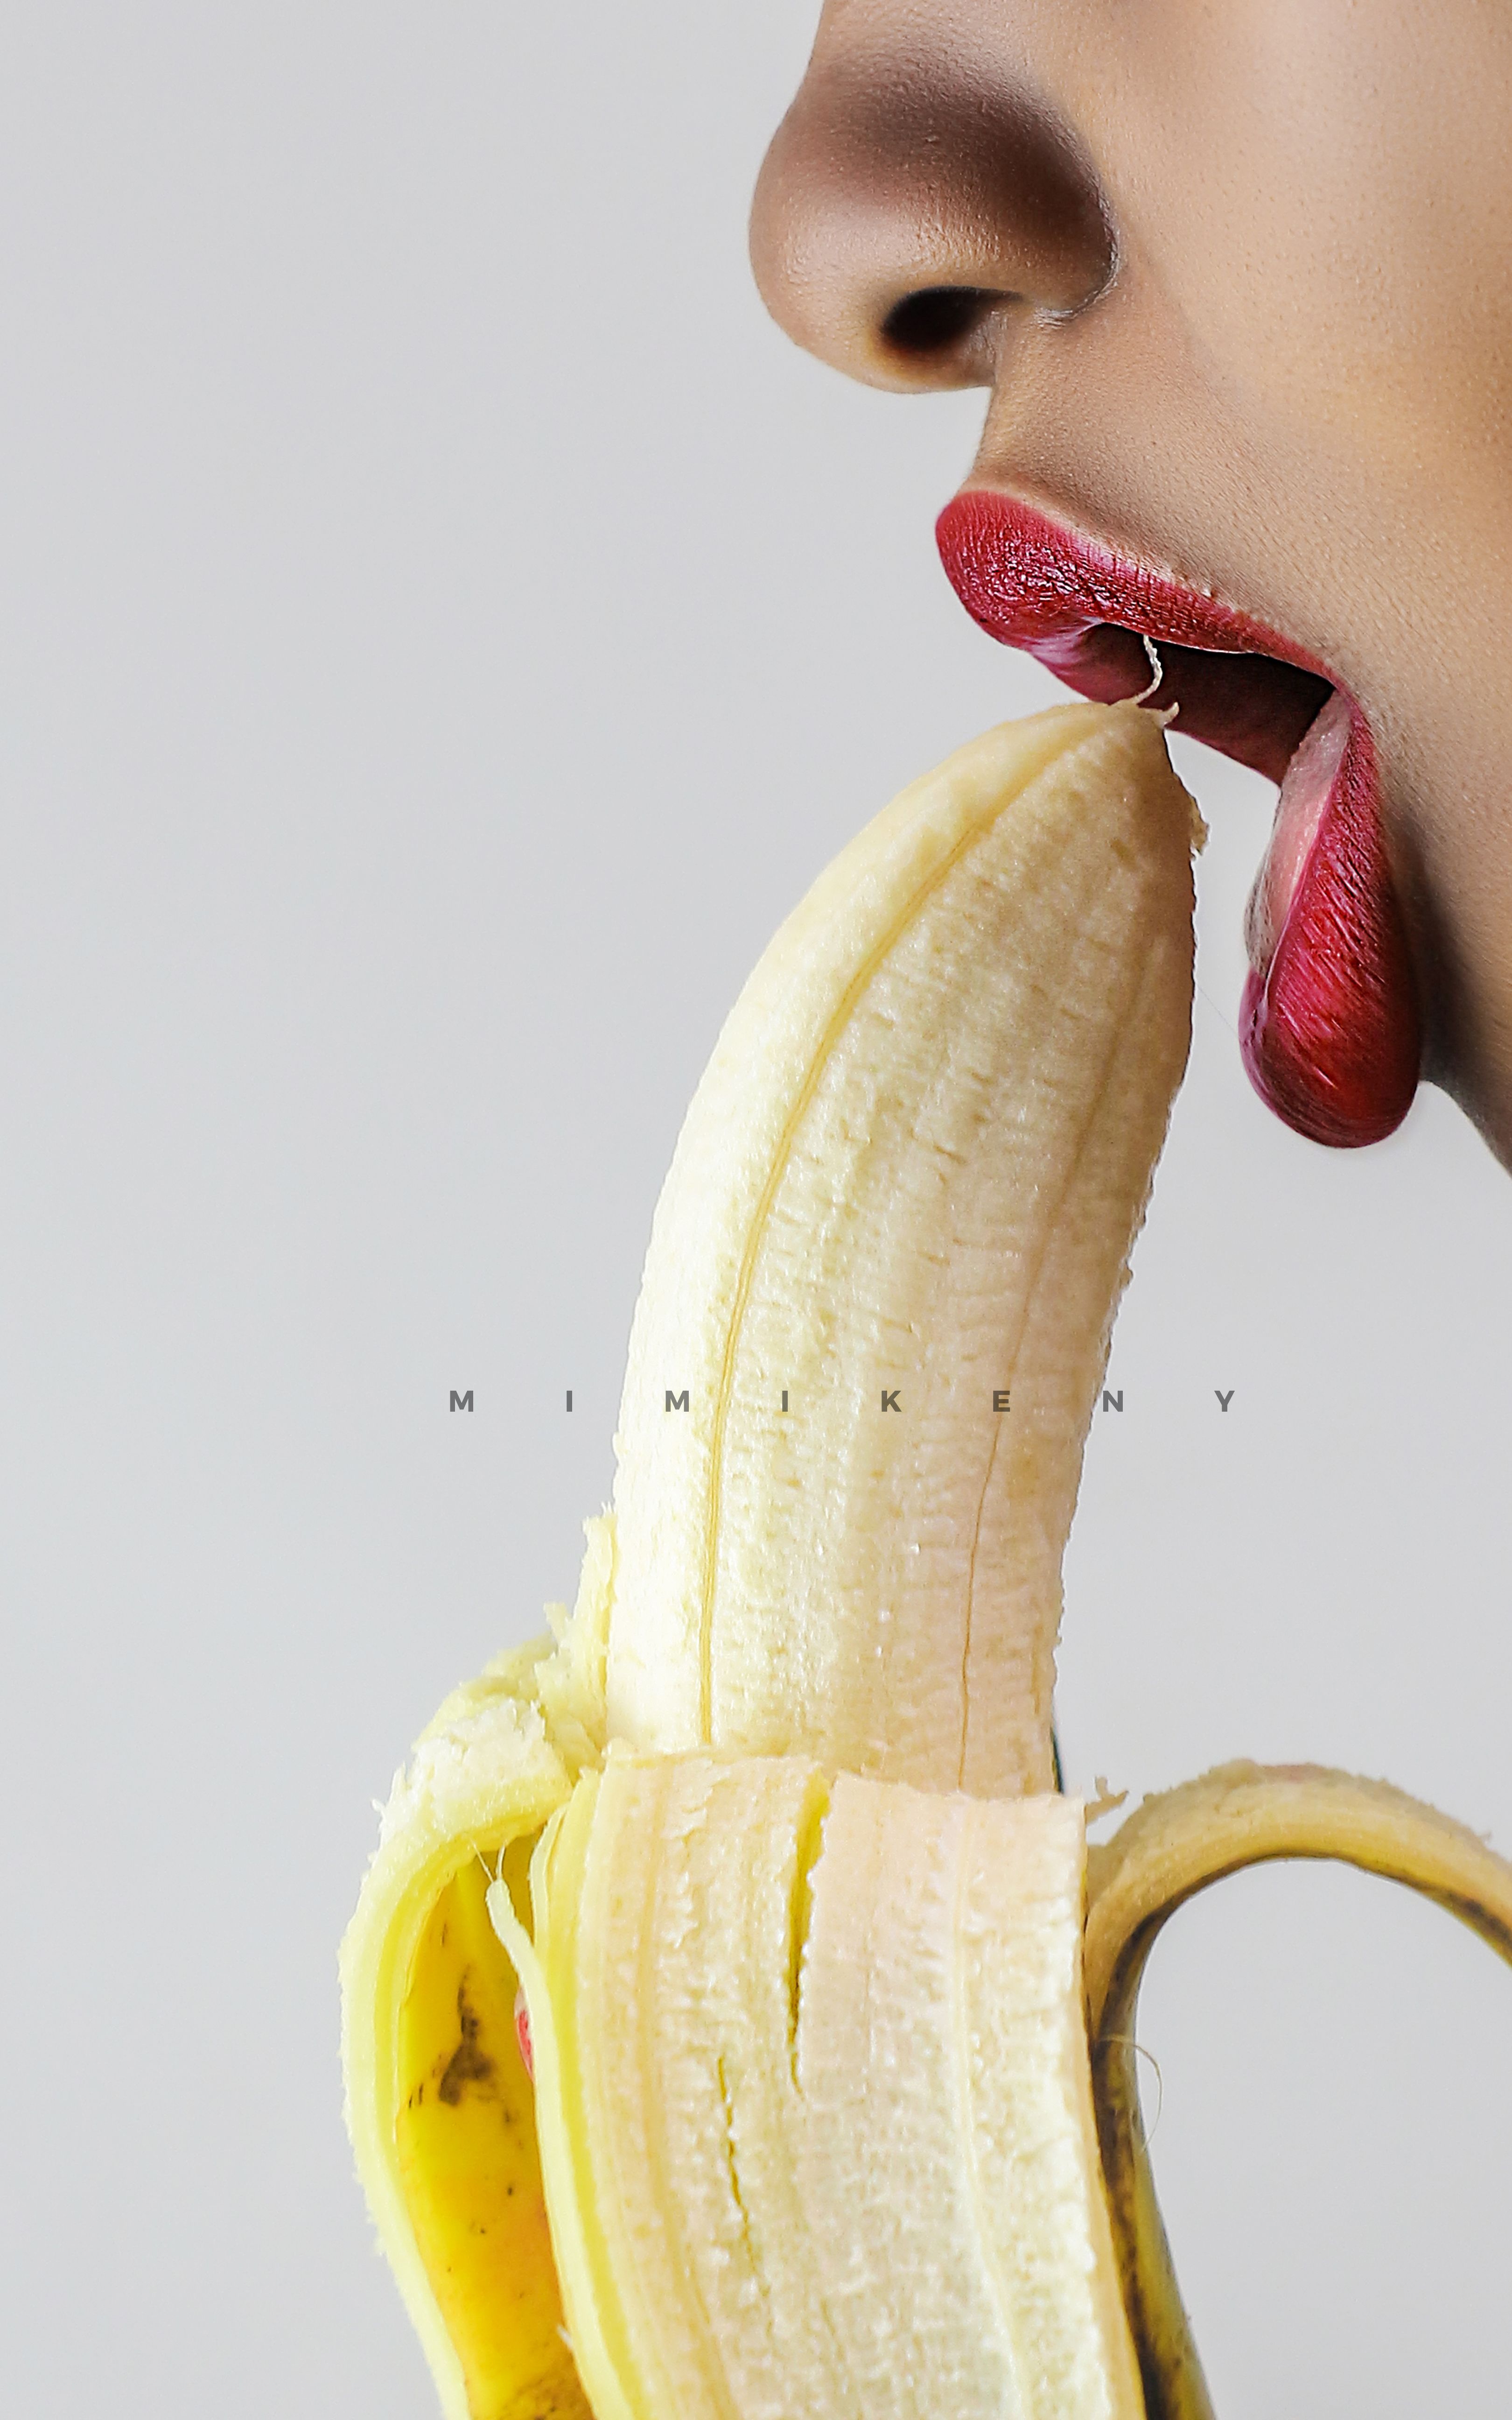 arcega arcegas recommends Girl Sucking On Banana